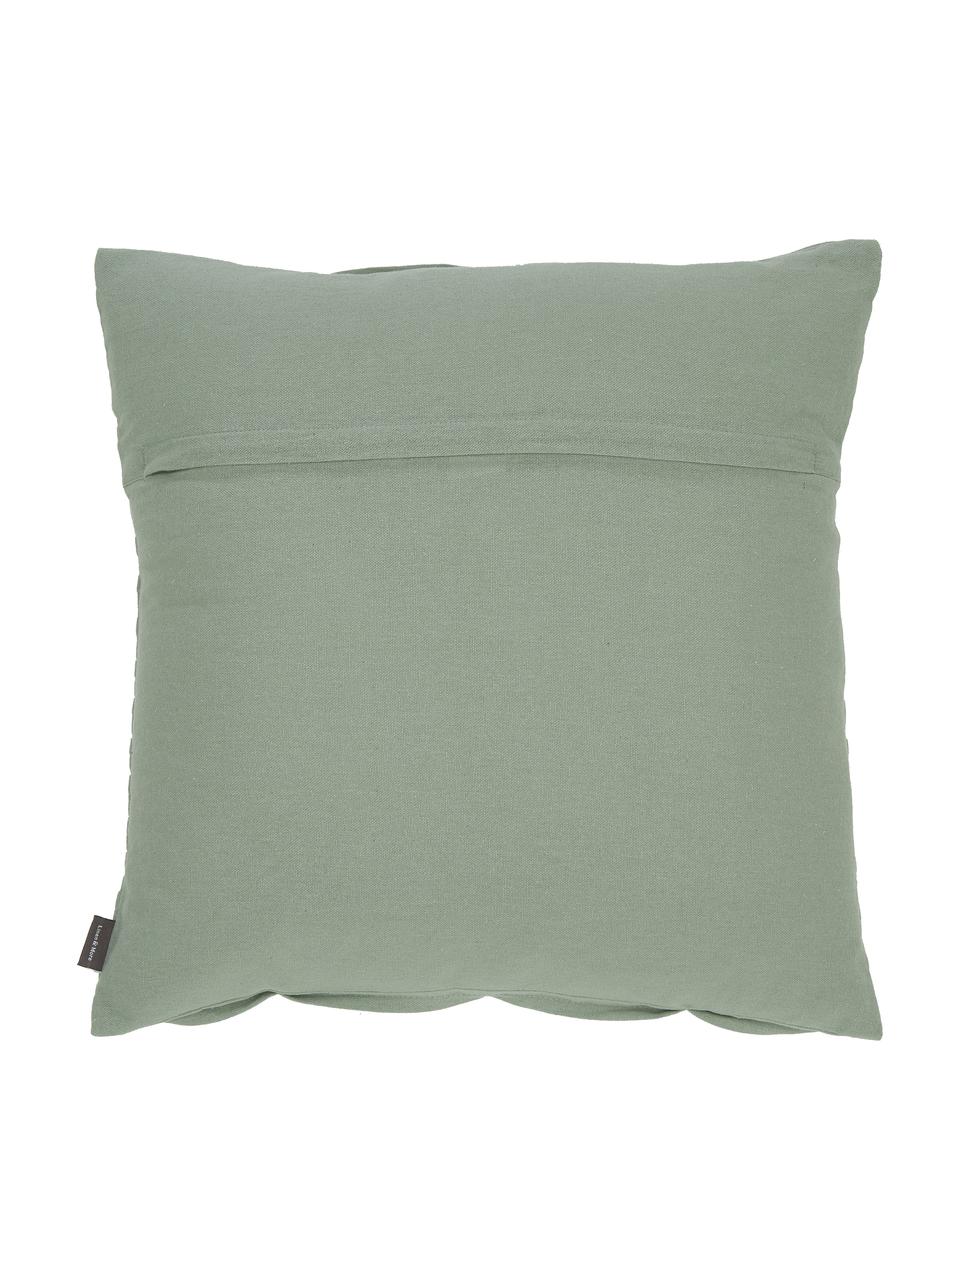 Poduszka z bawełny z wypełnieniem Pleated, 100% bawełna, Miętowy, S 45 x D 45 cm